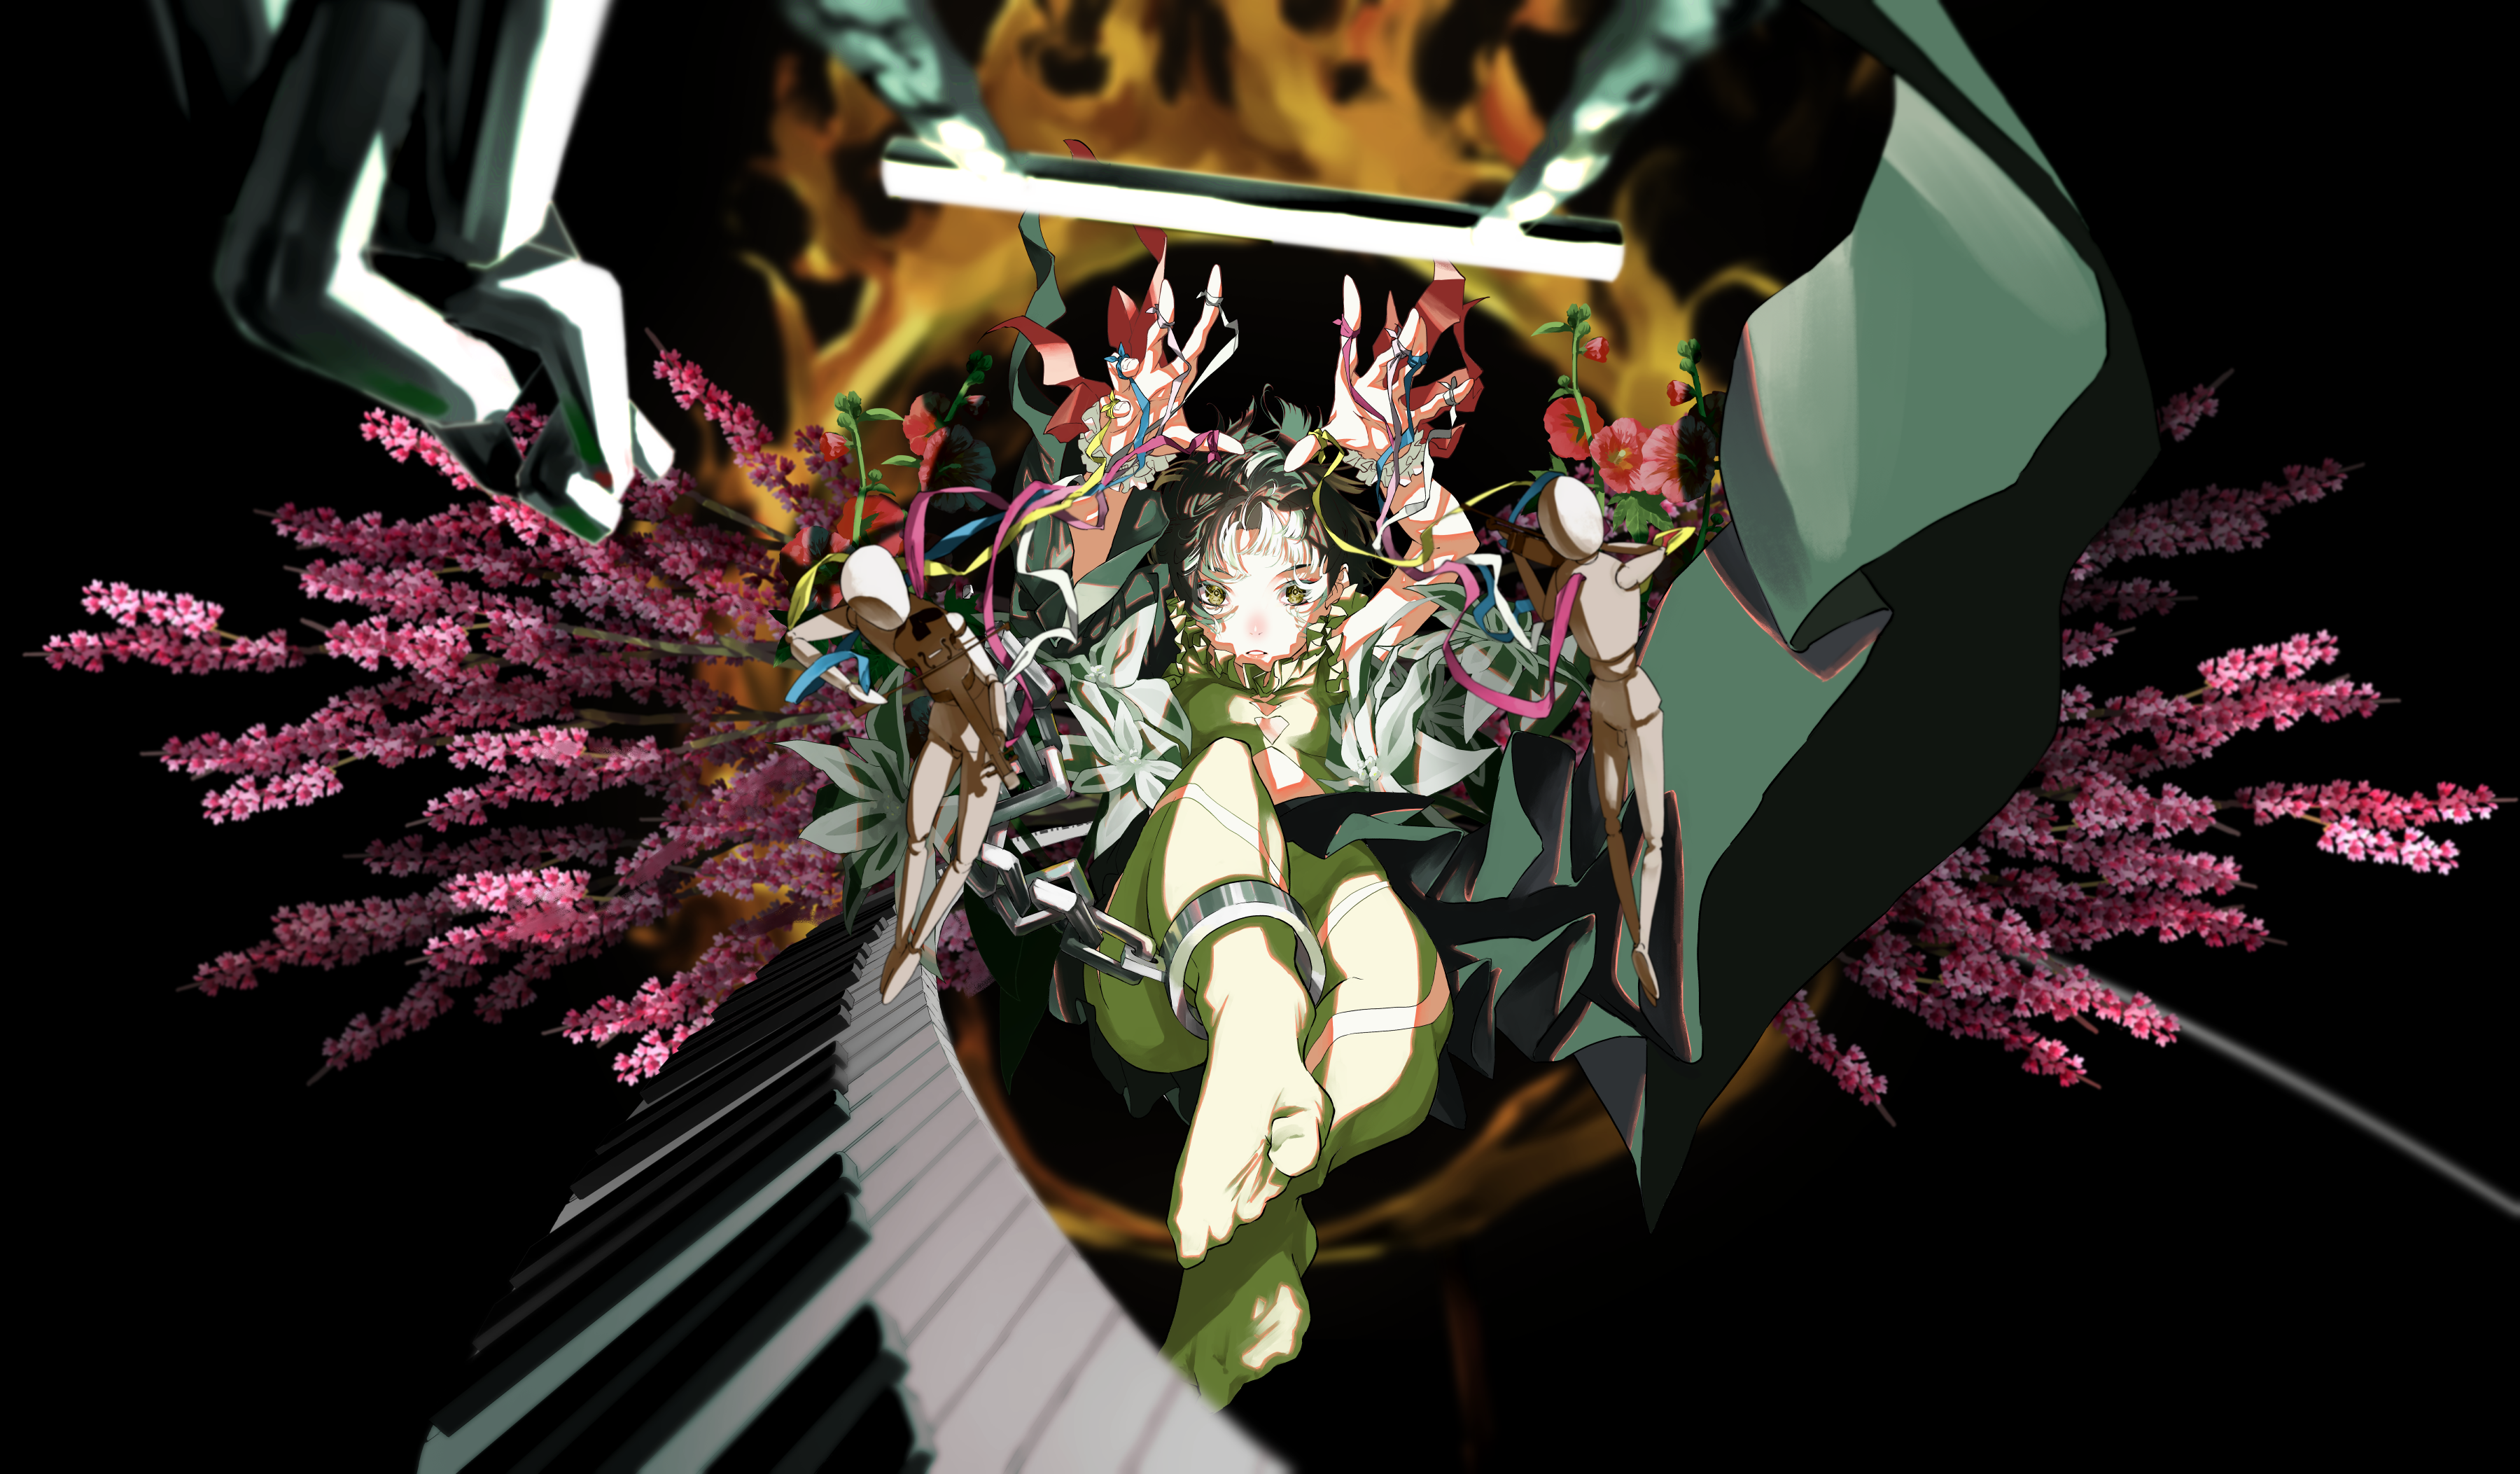 Nico Tina Minimalism Anime Girls Flowers Piano 3600x2105